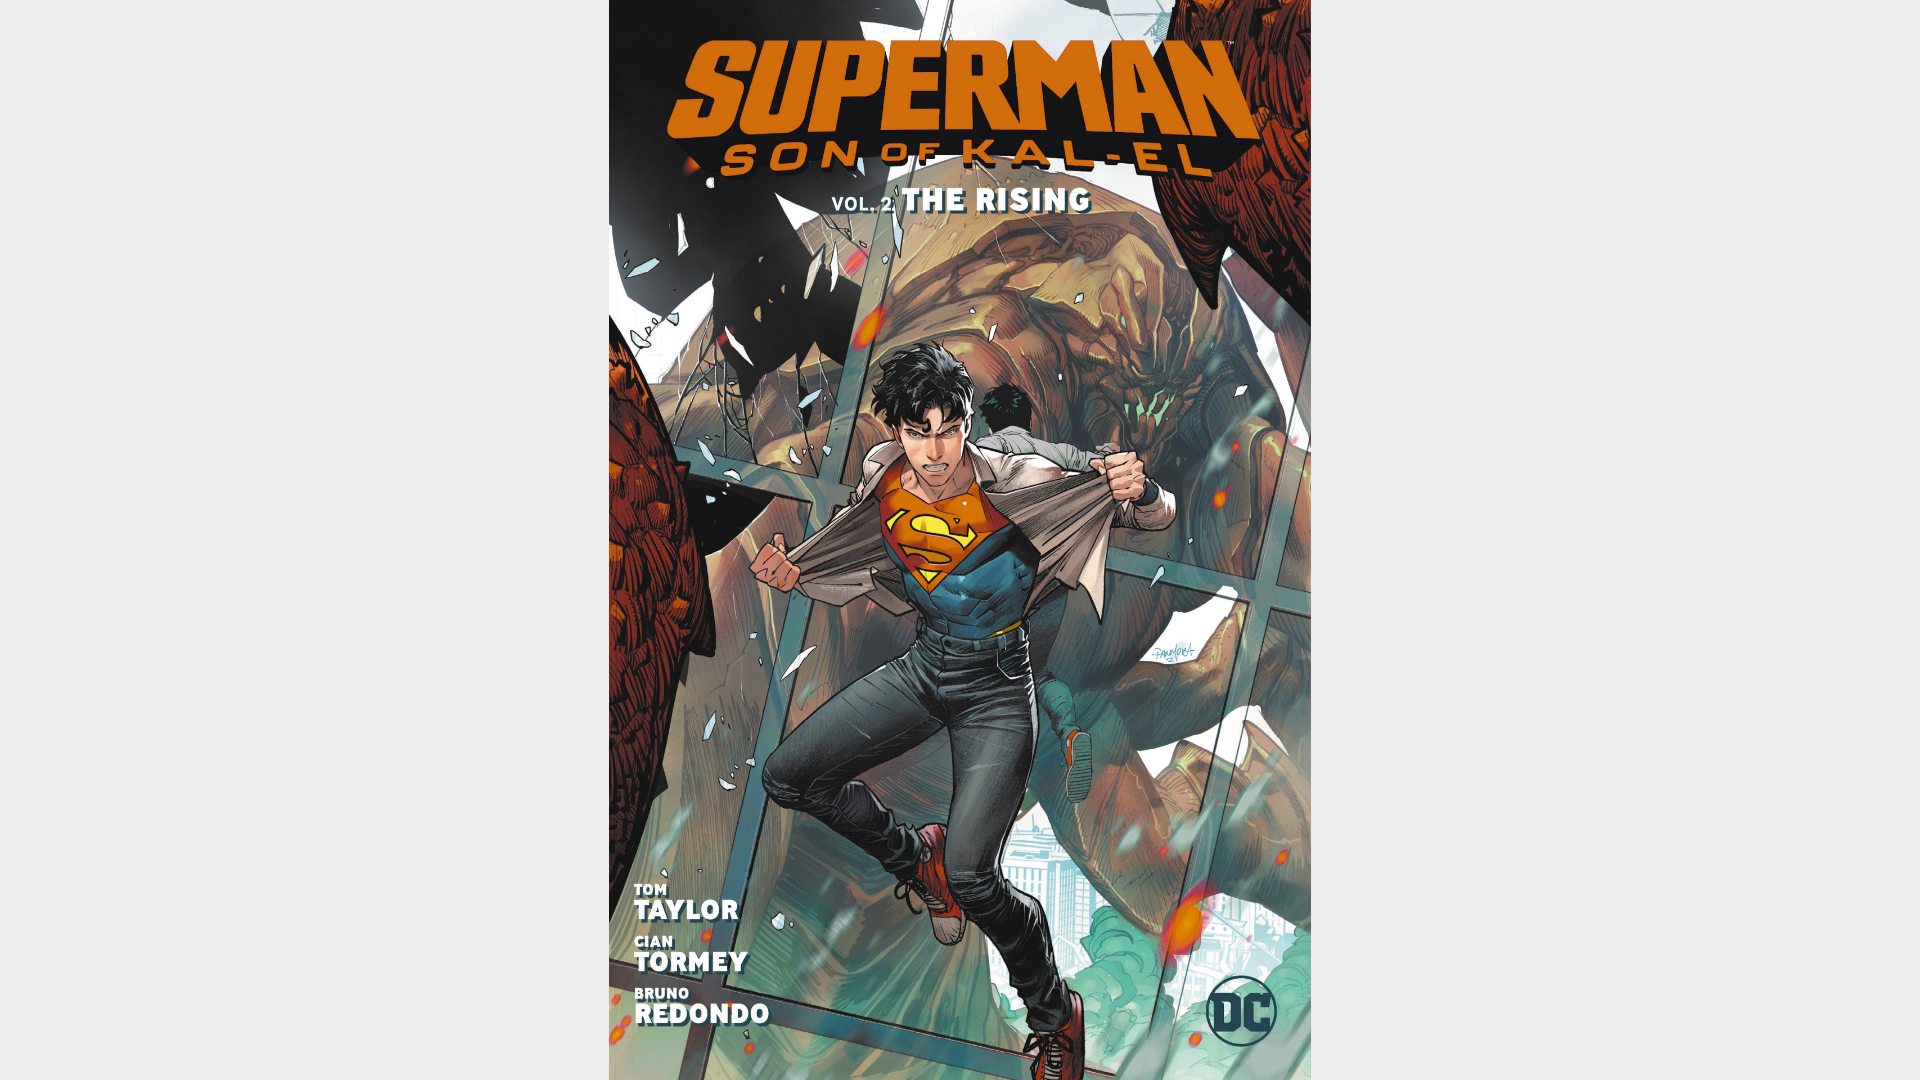 SUPERMAN: SON OF KAL-EL VOL. 2: THE RISING